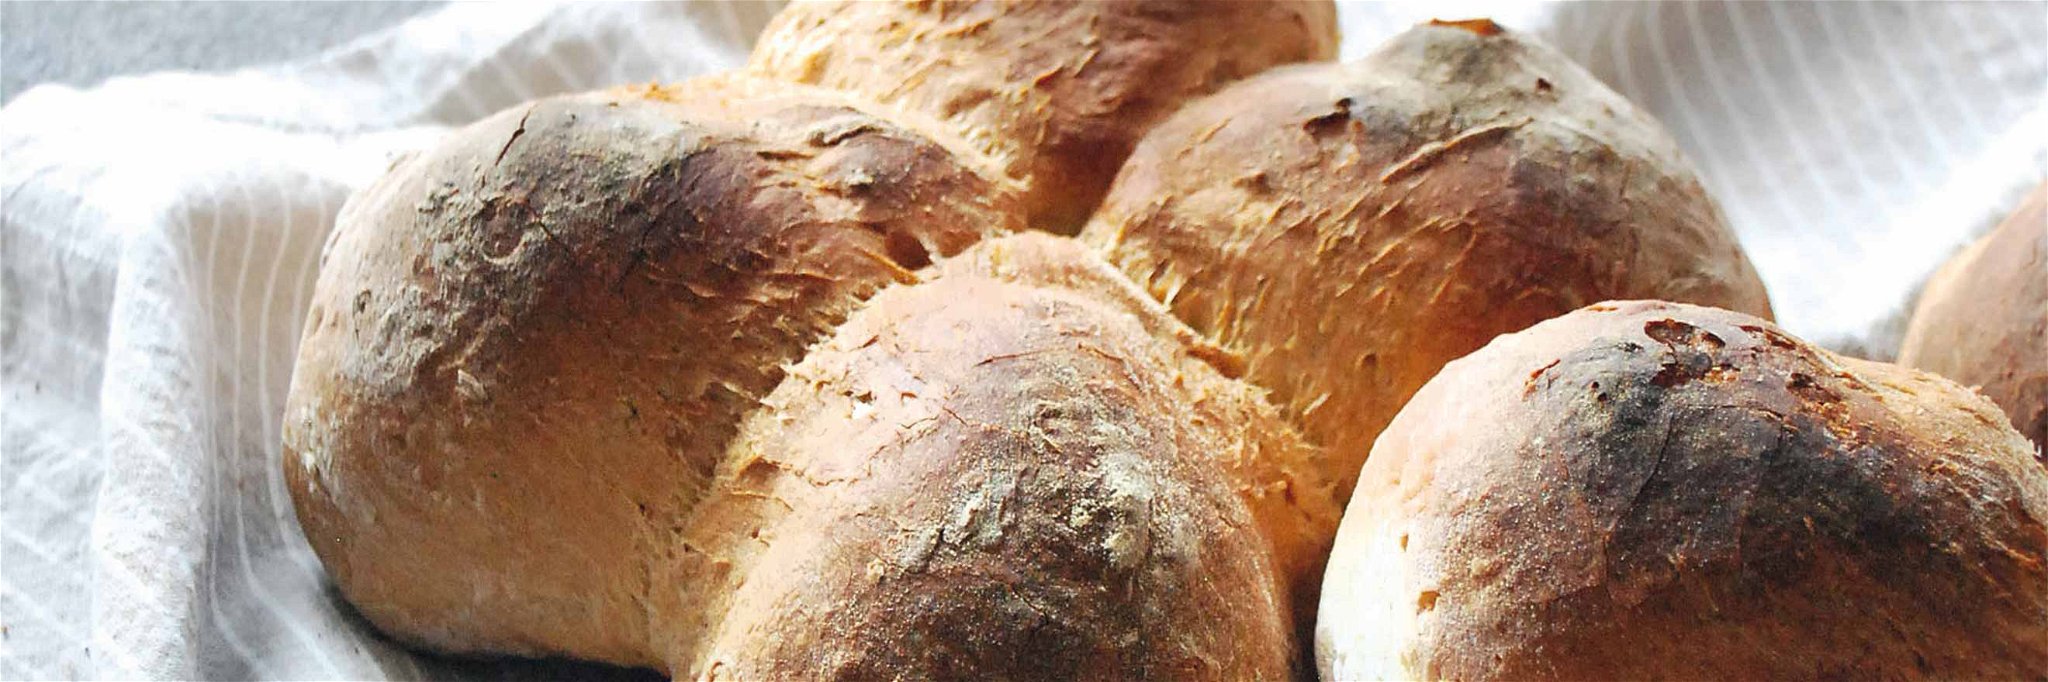 Das Buchmann’s Bürli zählt zu den beliebtesten Zürcher Brotklassikern.